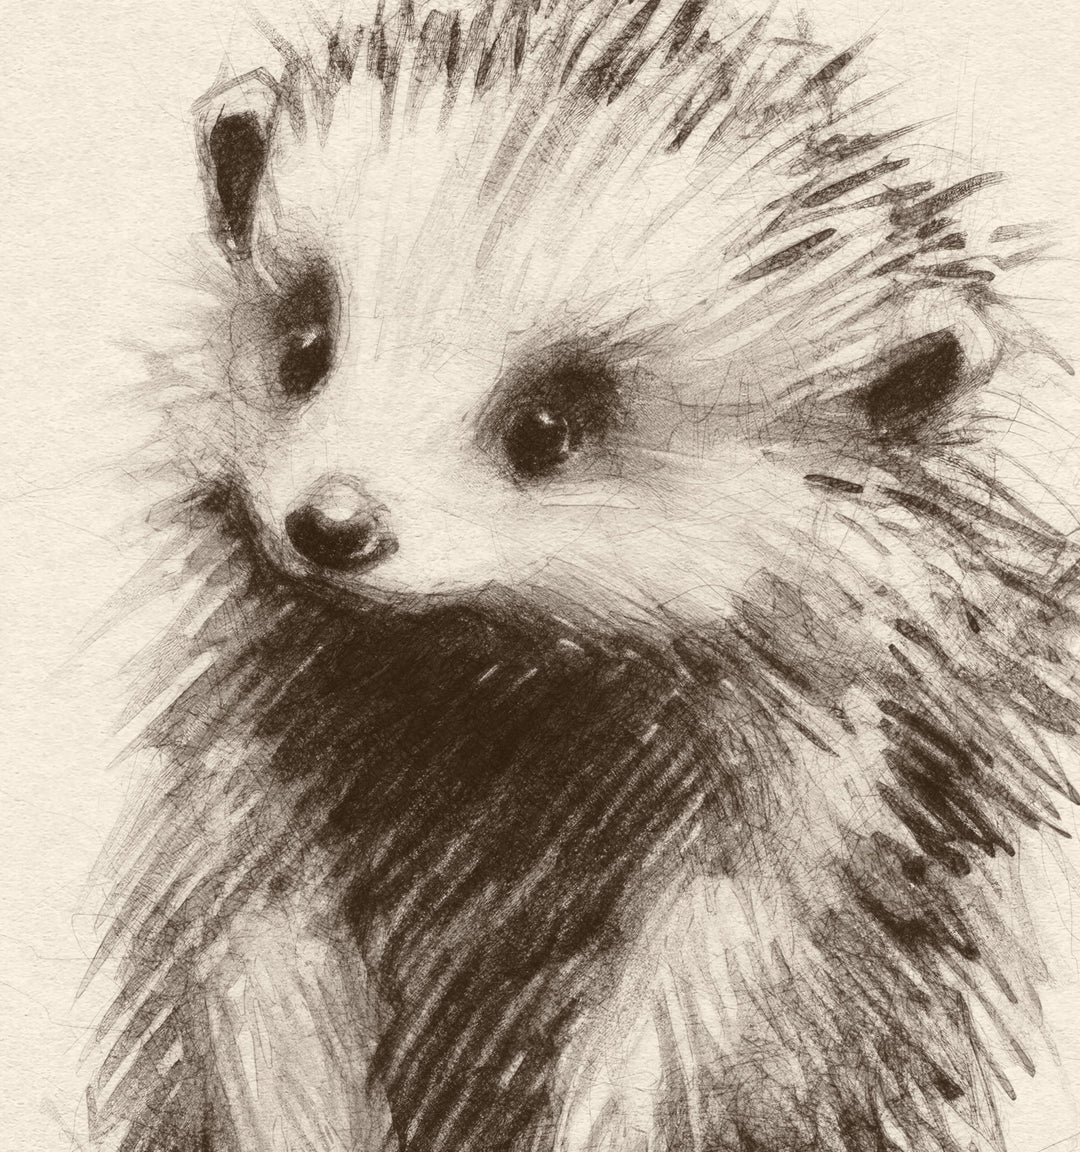 a pencil drawing of a hedgehog